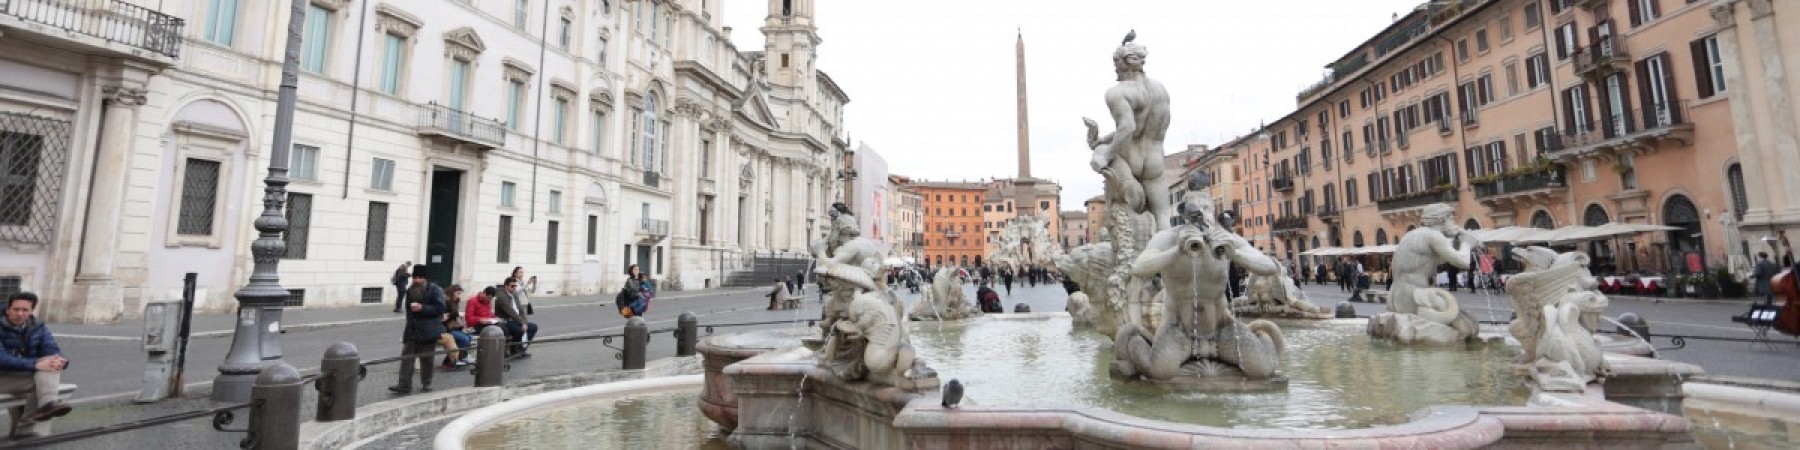 TOUR PRIVE - Tour Panoramique de Rome en voiture